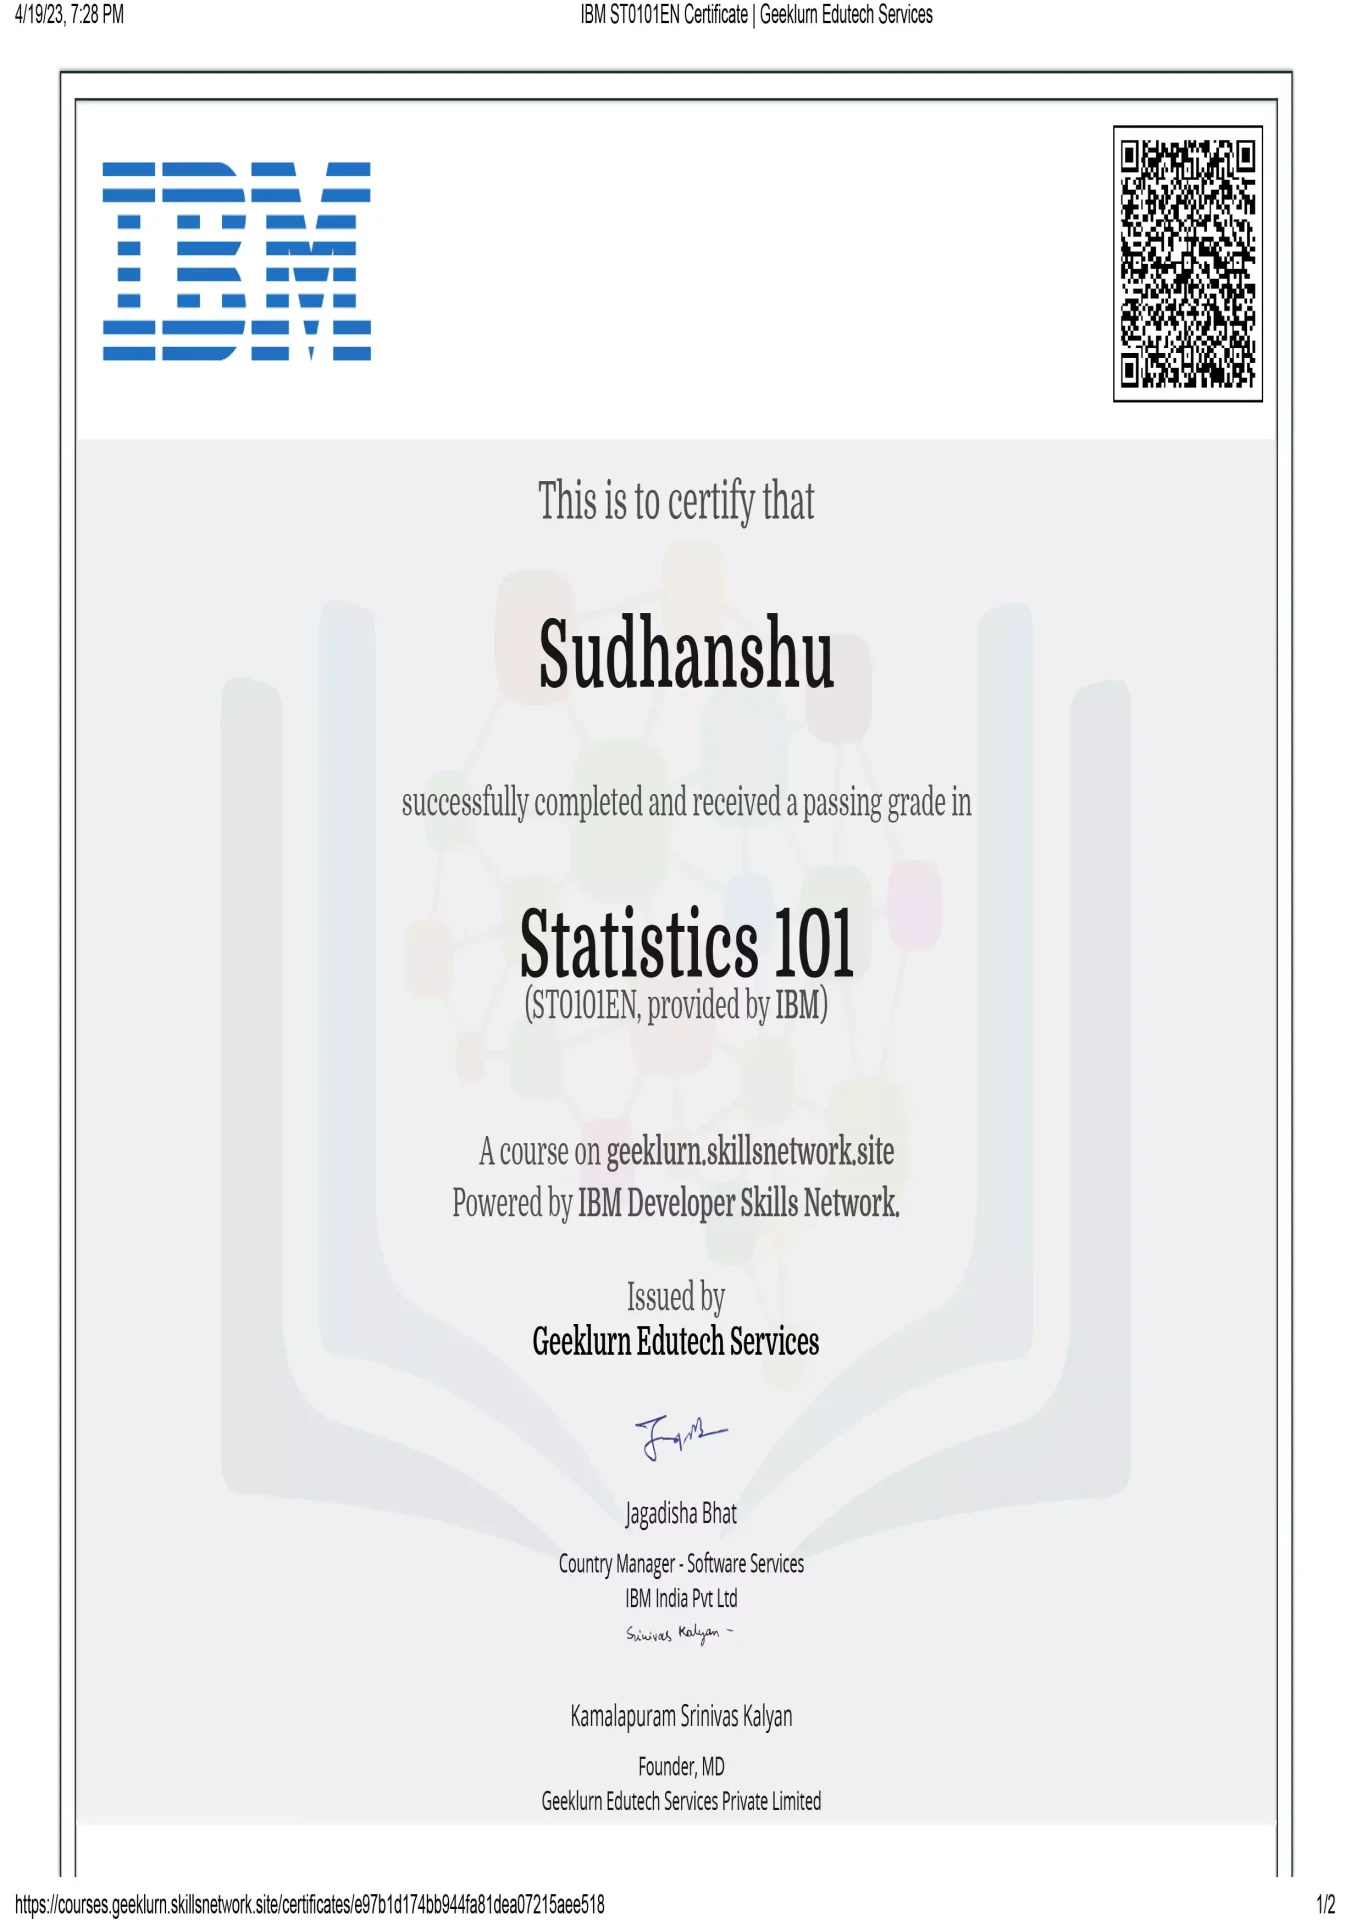 ibm-st0101en-certificate-geeklurn-edutech-services-5